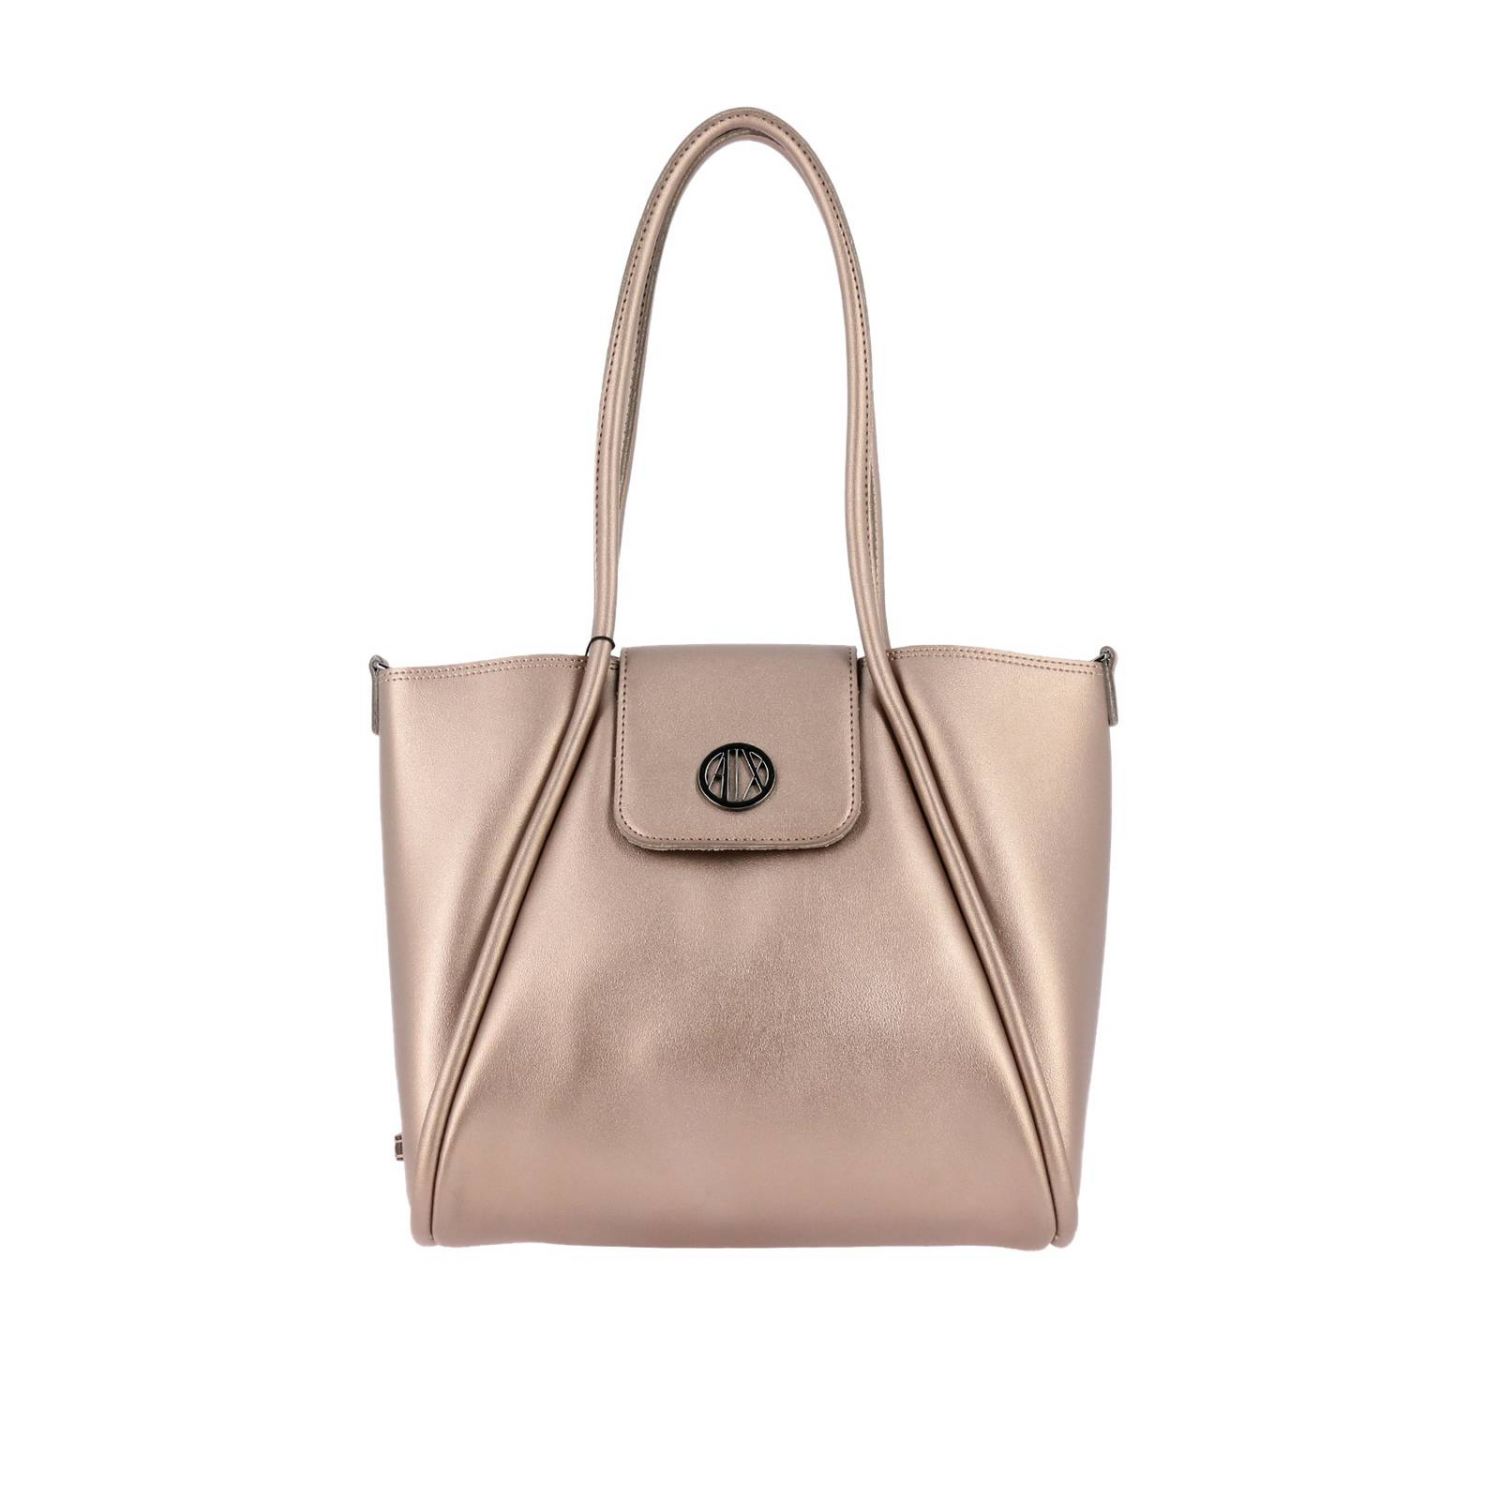 Armani Exchange Outlet: Shoulder bag women - Silver | Shoulder Bag ...